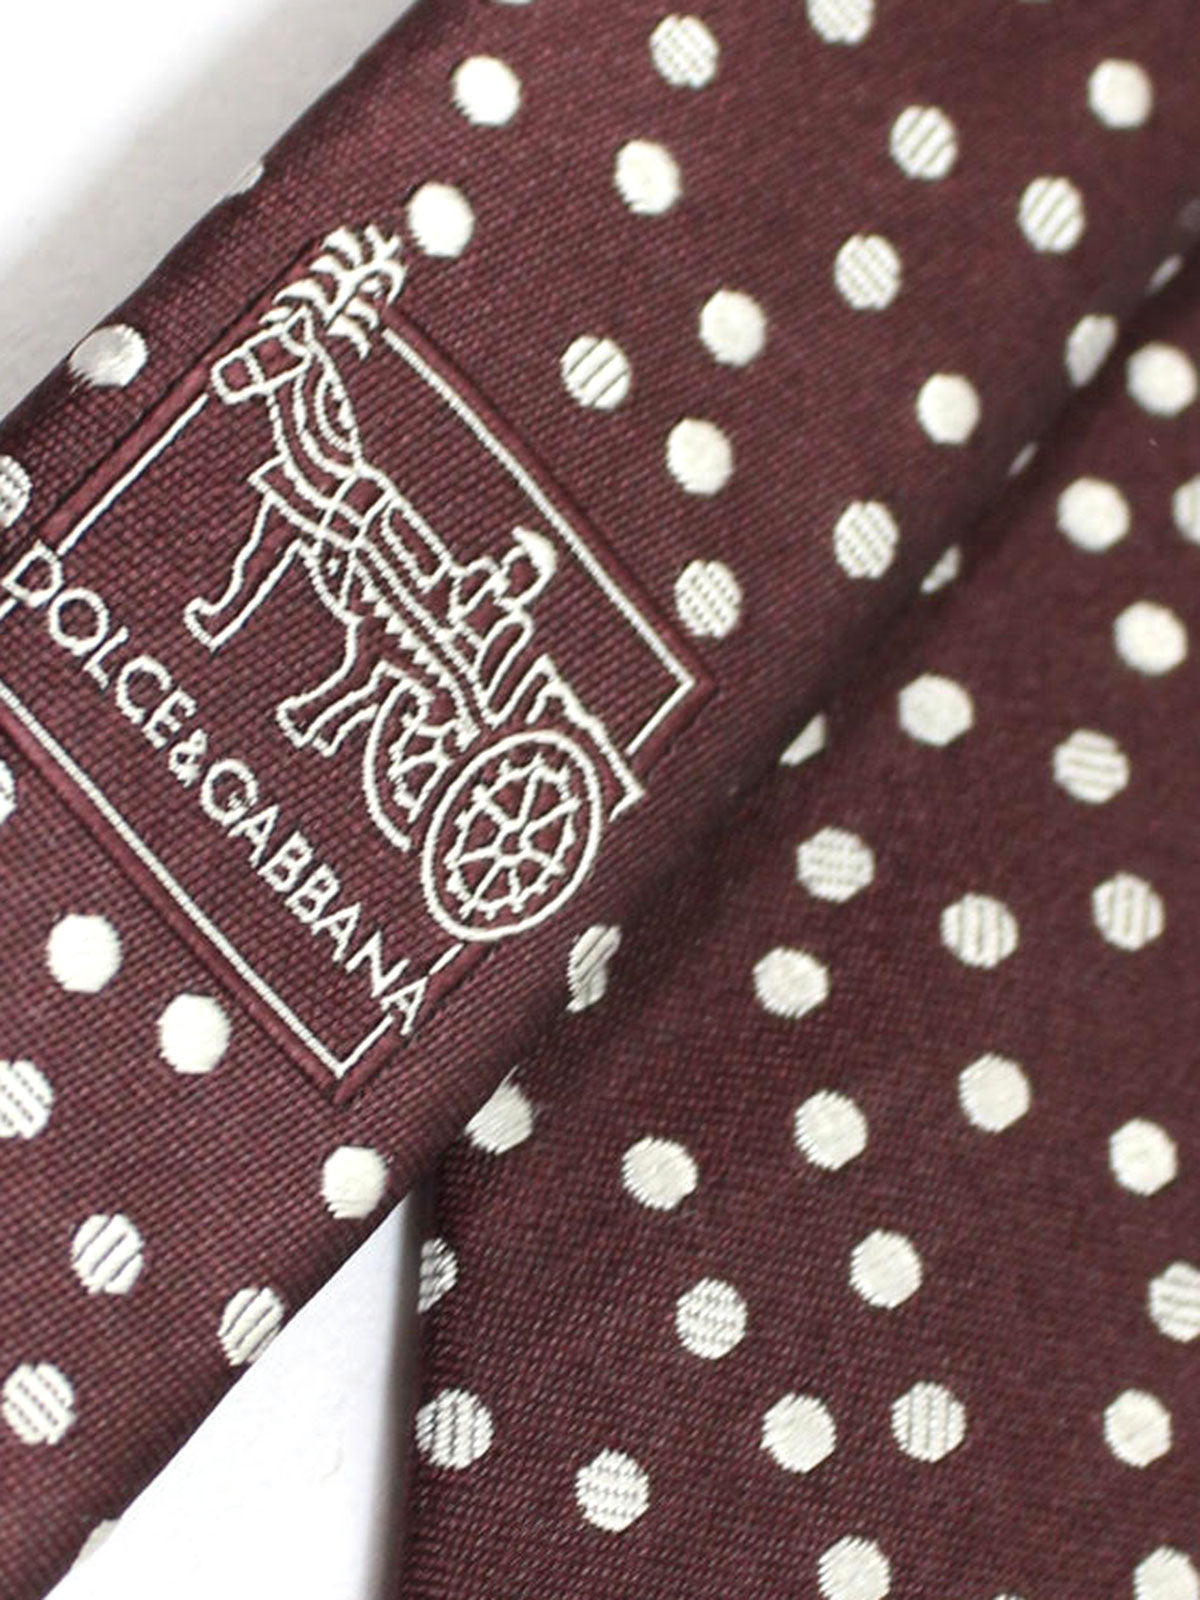 Dolce & Gabbana Skinny Tie Brown Silver Polka Dots